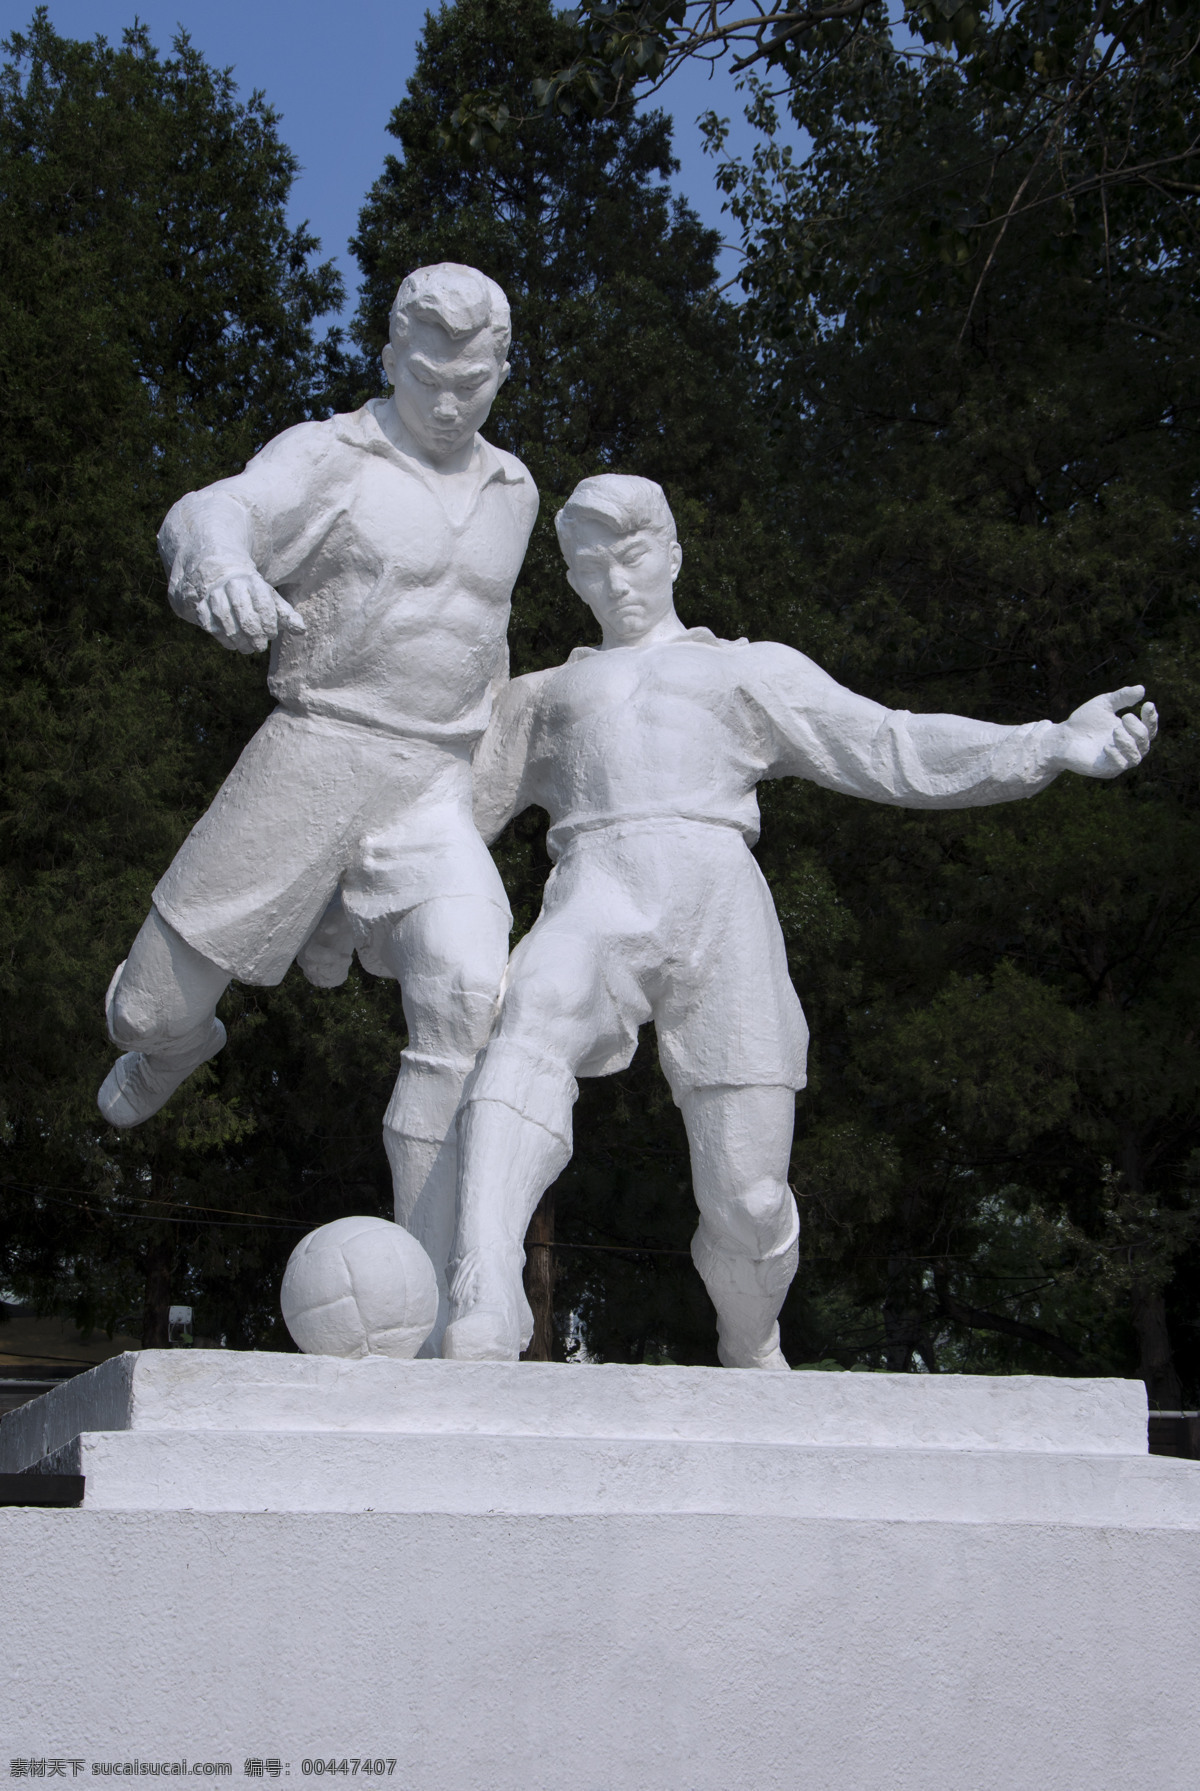 城市雕塑 足球 足球运动 足球雕塑 工体雕塑 运动健儿 运动员 体育雕塑 健美 运动员雕塑 运动美 人体美 人物雕塑 雕塑艺术 现代雕塑 建筑园林 雕塑